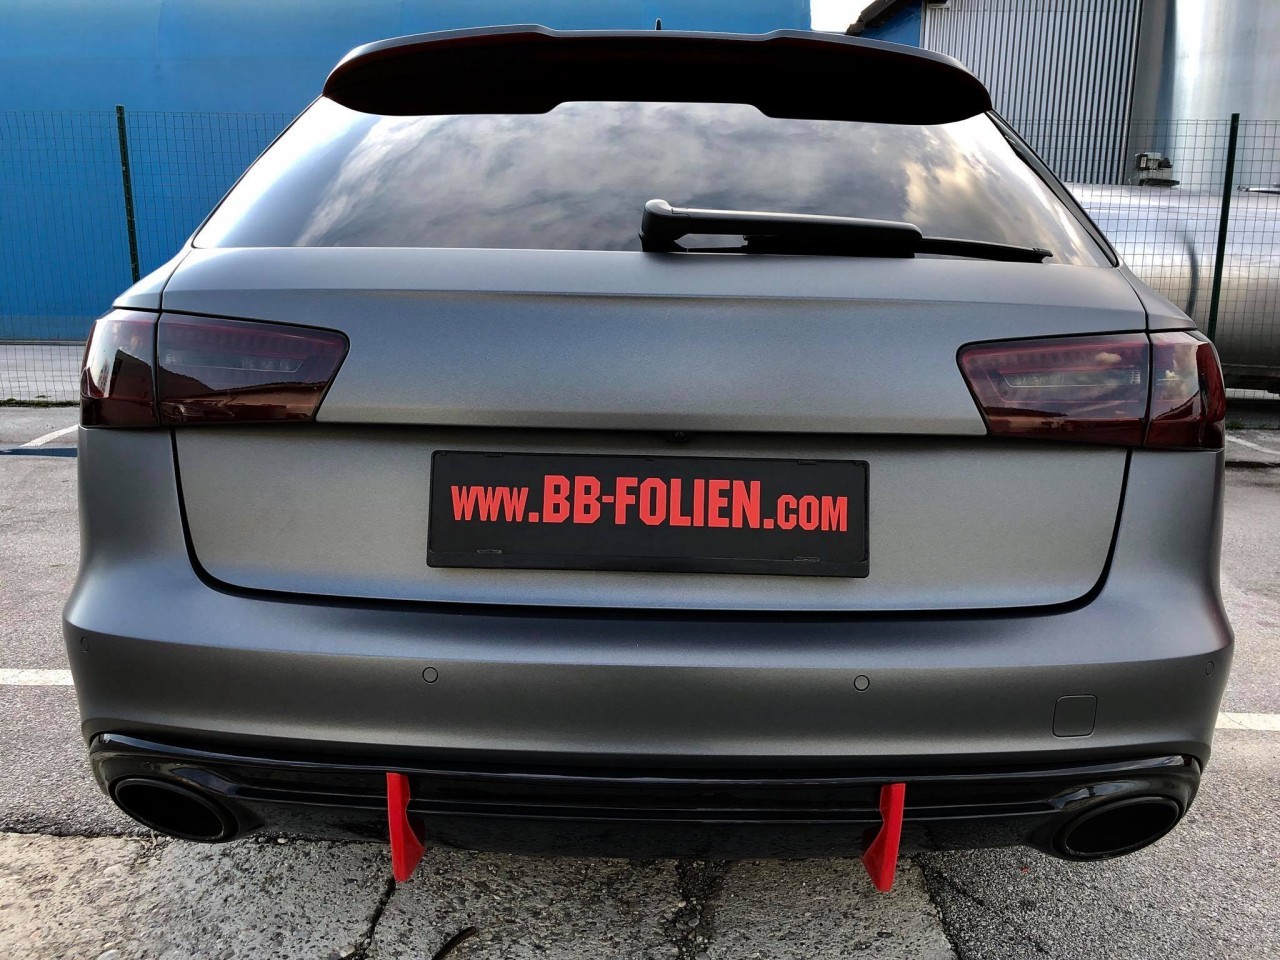 Folierung-Wrap-Foliranje Audi S6 KPL in Chrom Blau X. matt- X.Carbon b